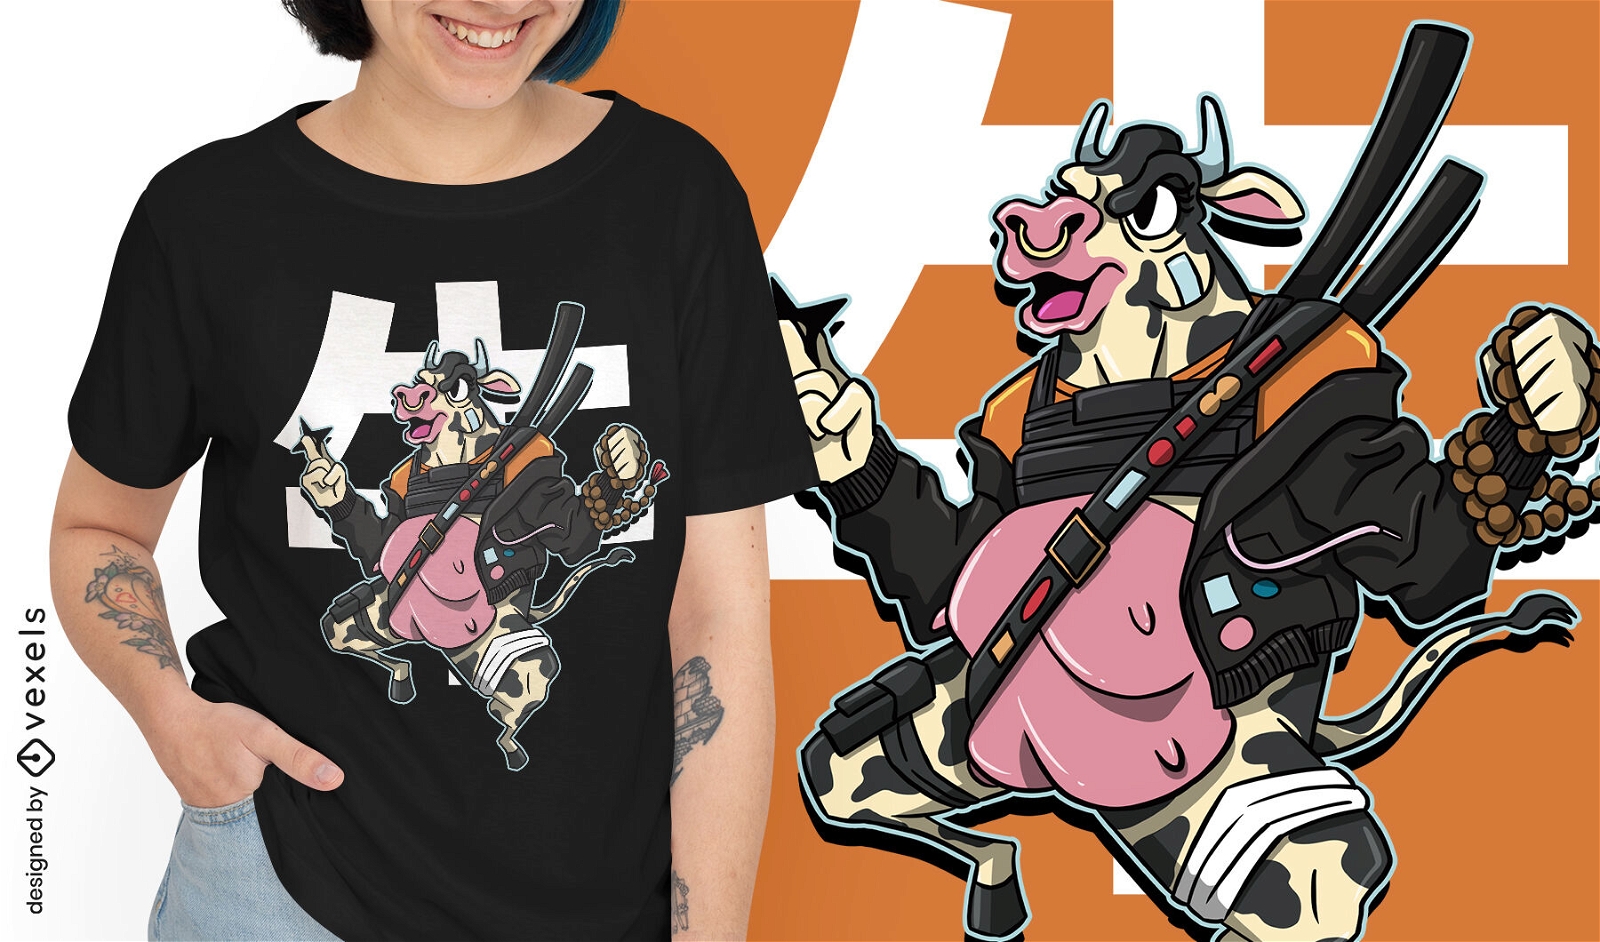 Diseño moderno de camiseta de vaca samurai.